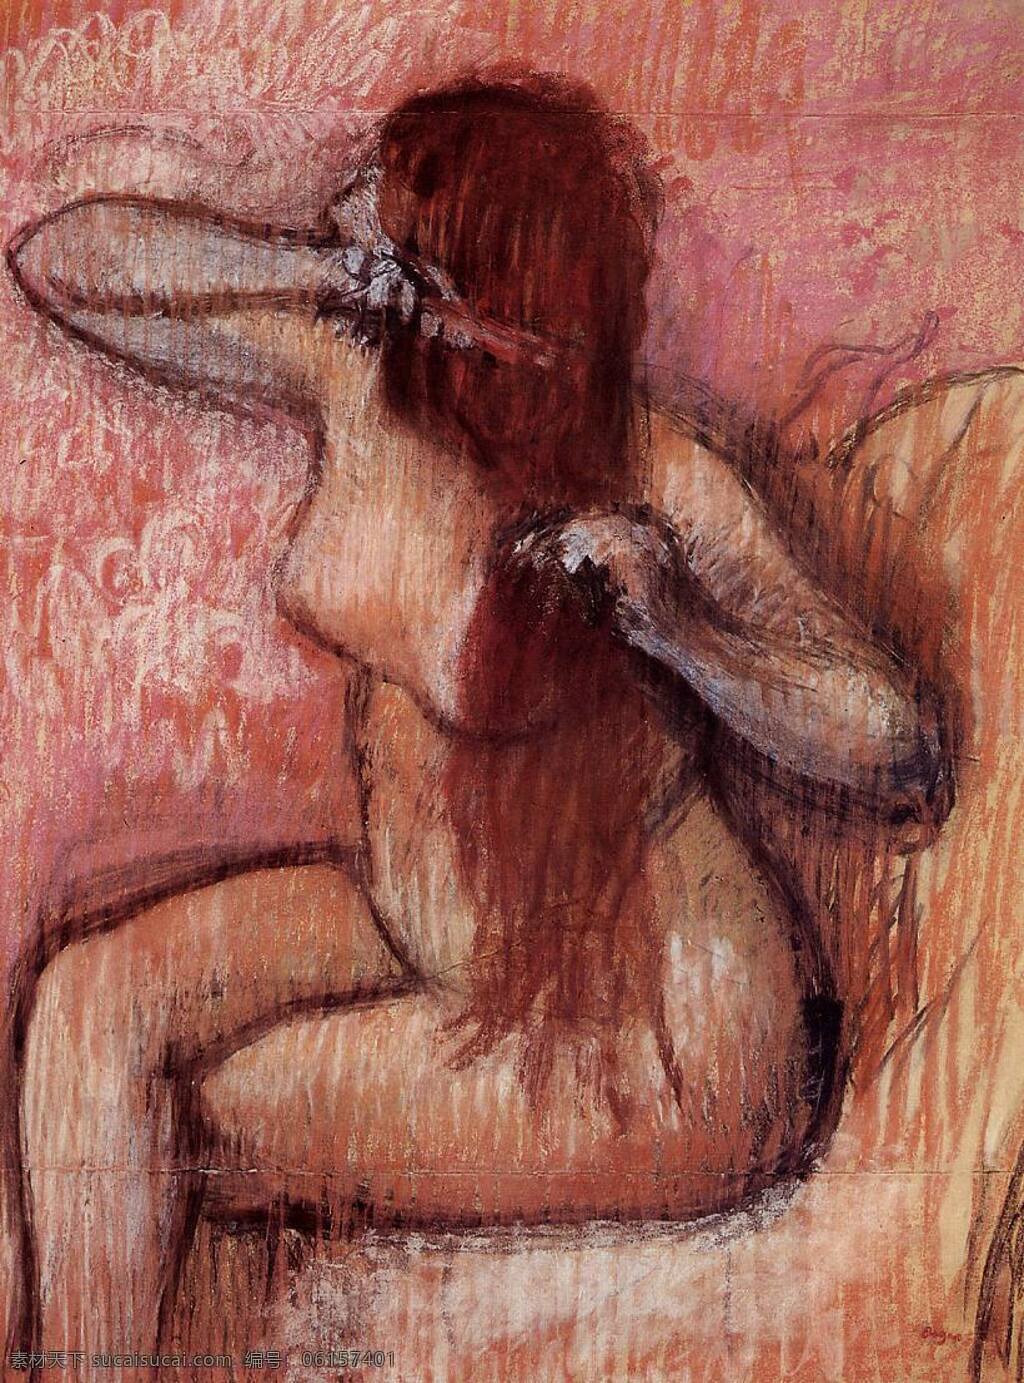 degas 印象派 人物 风景 人体 女性 油画 装饰画 法国 画家 埃德加 德加 edgar